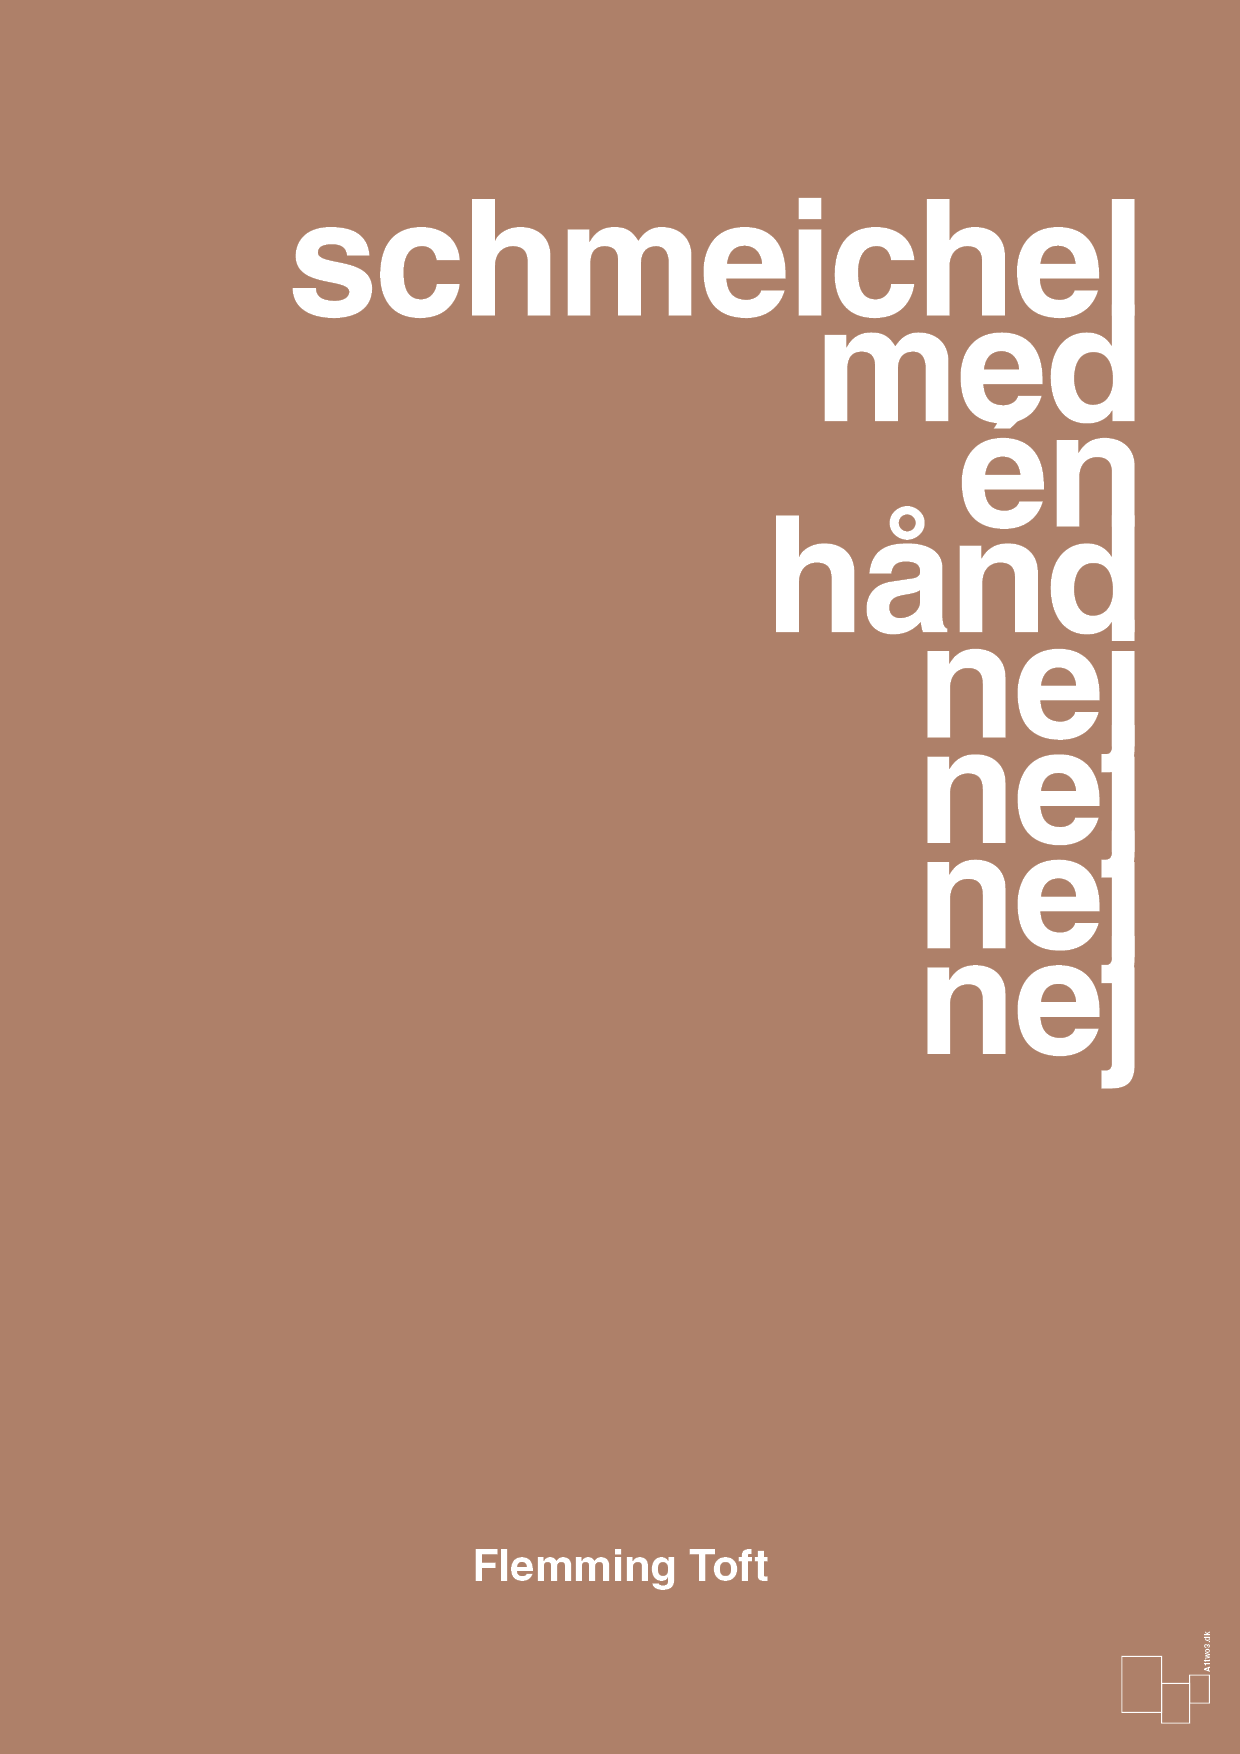 schmeichel med én hånd nej nej nej nej - Plakat med Citater i Cider Spice